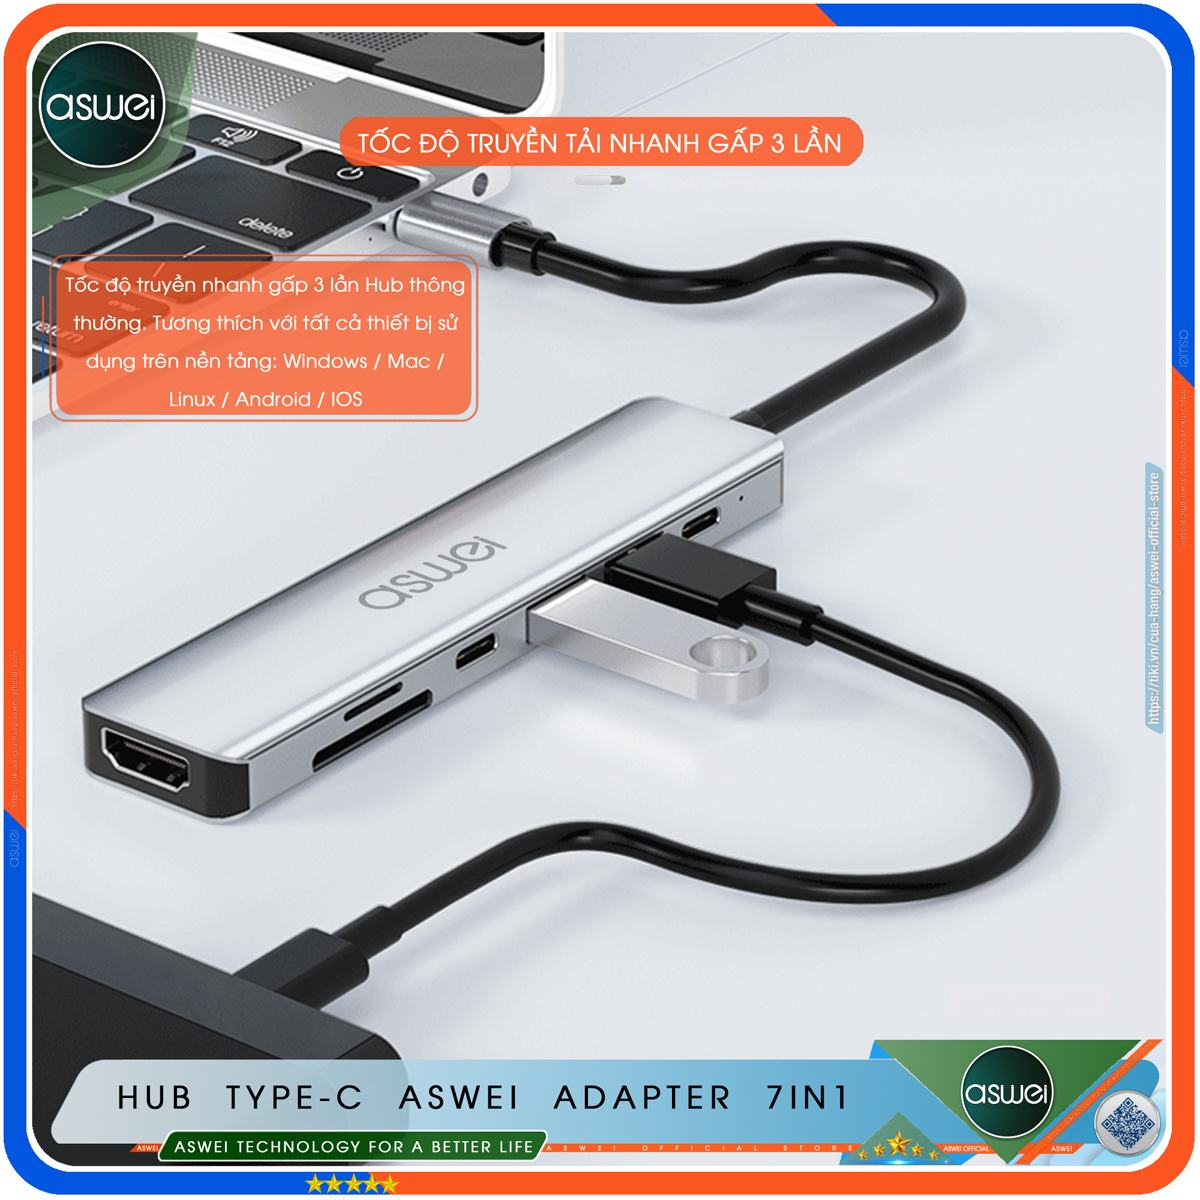 Hub Type C ASWEI 7 in 1 To HDMI, USB 3.0, SD, TF, USB C, PD - Cổng Chia USB, Ổ Chia USB Tốc Độ Cao - Hub Chuyển Đổi USB Type C 7 Cổng Dành Cho Macbook, Laptop, PC, Máy Tính Bảng, Điện Thoại - Hàng Chính Hãng